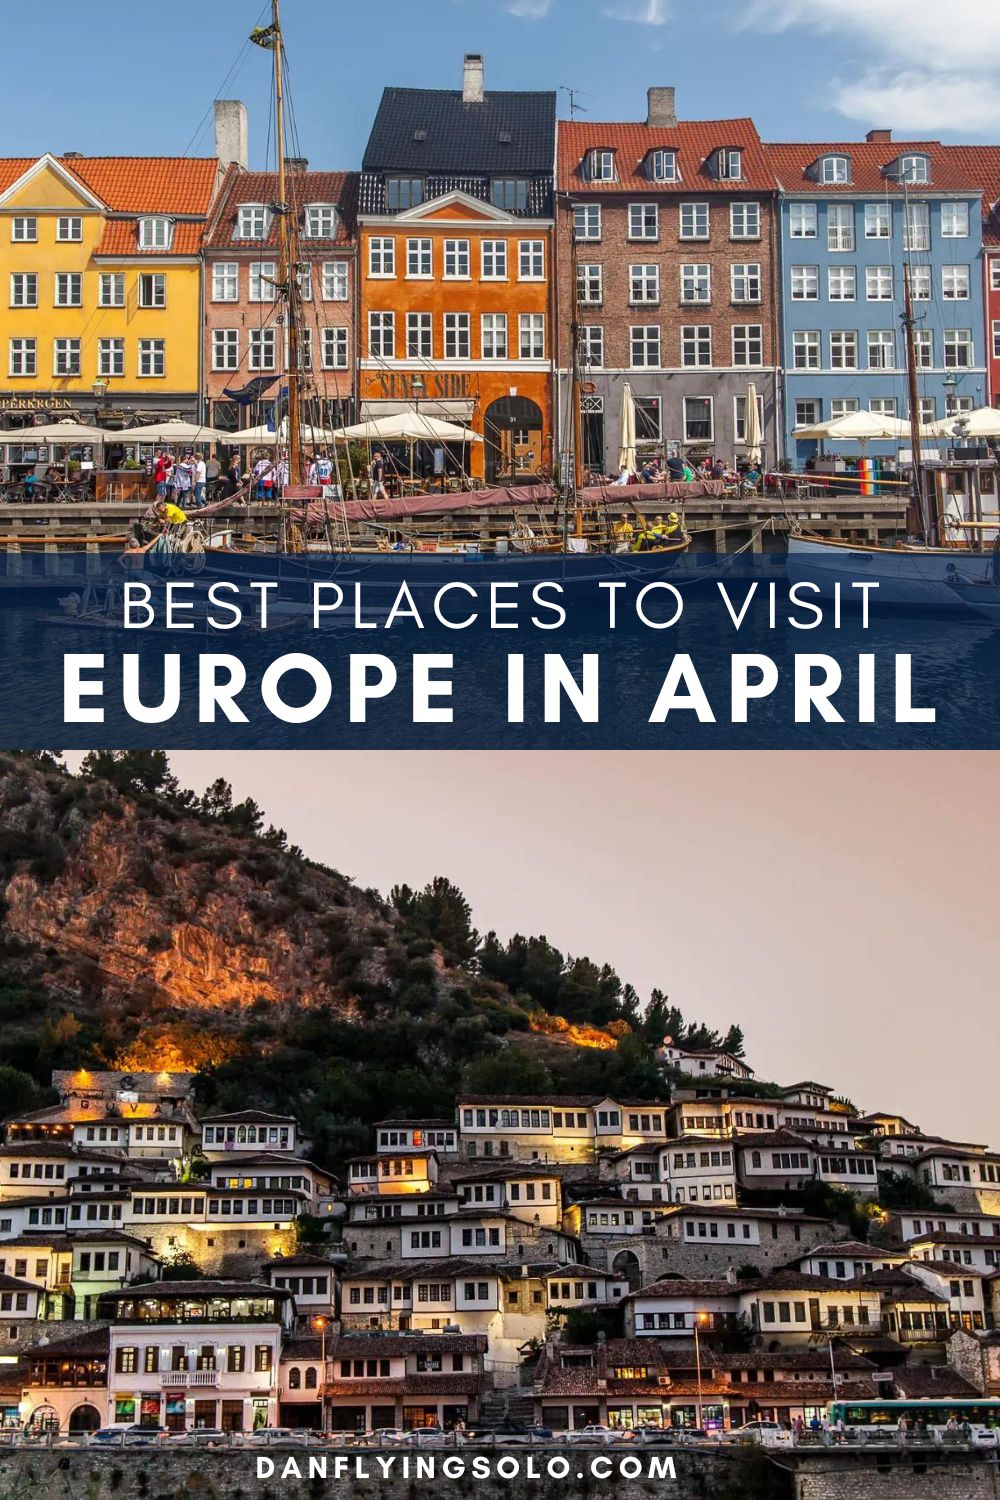 发现一些最好的地方，在四月份去欧洲城市度假，复活节度假，以及欧洲最温暖的地方。